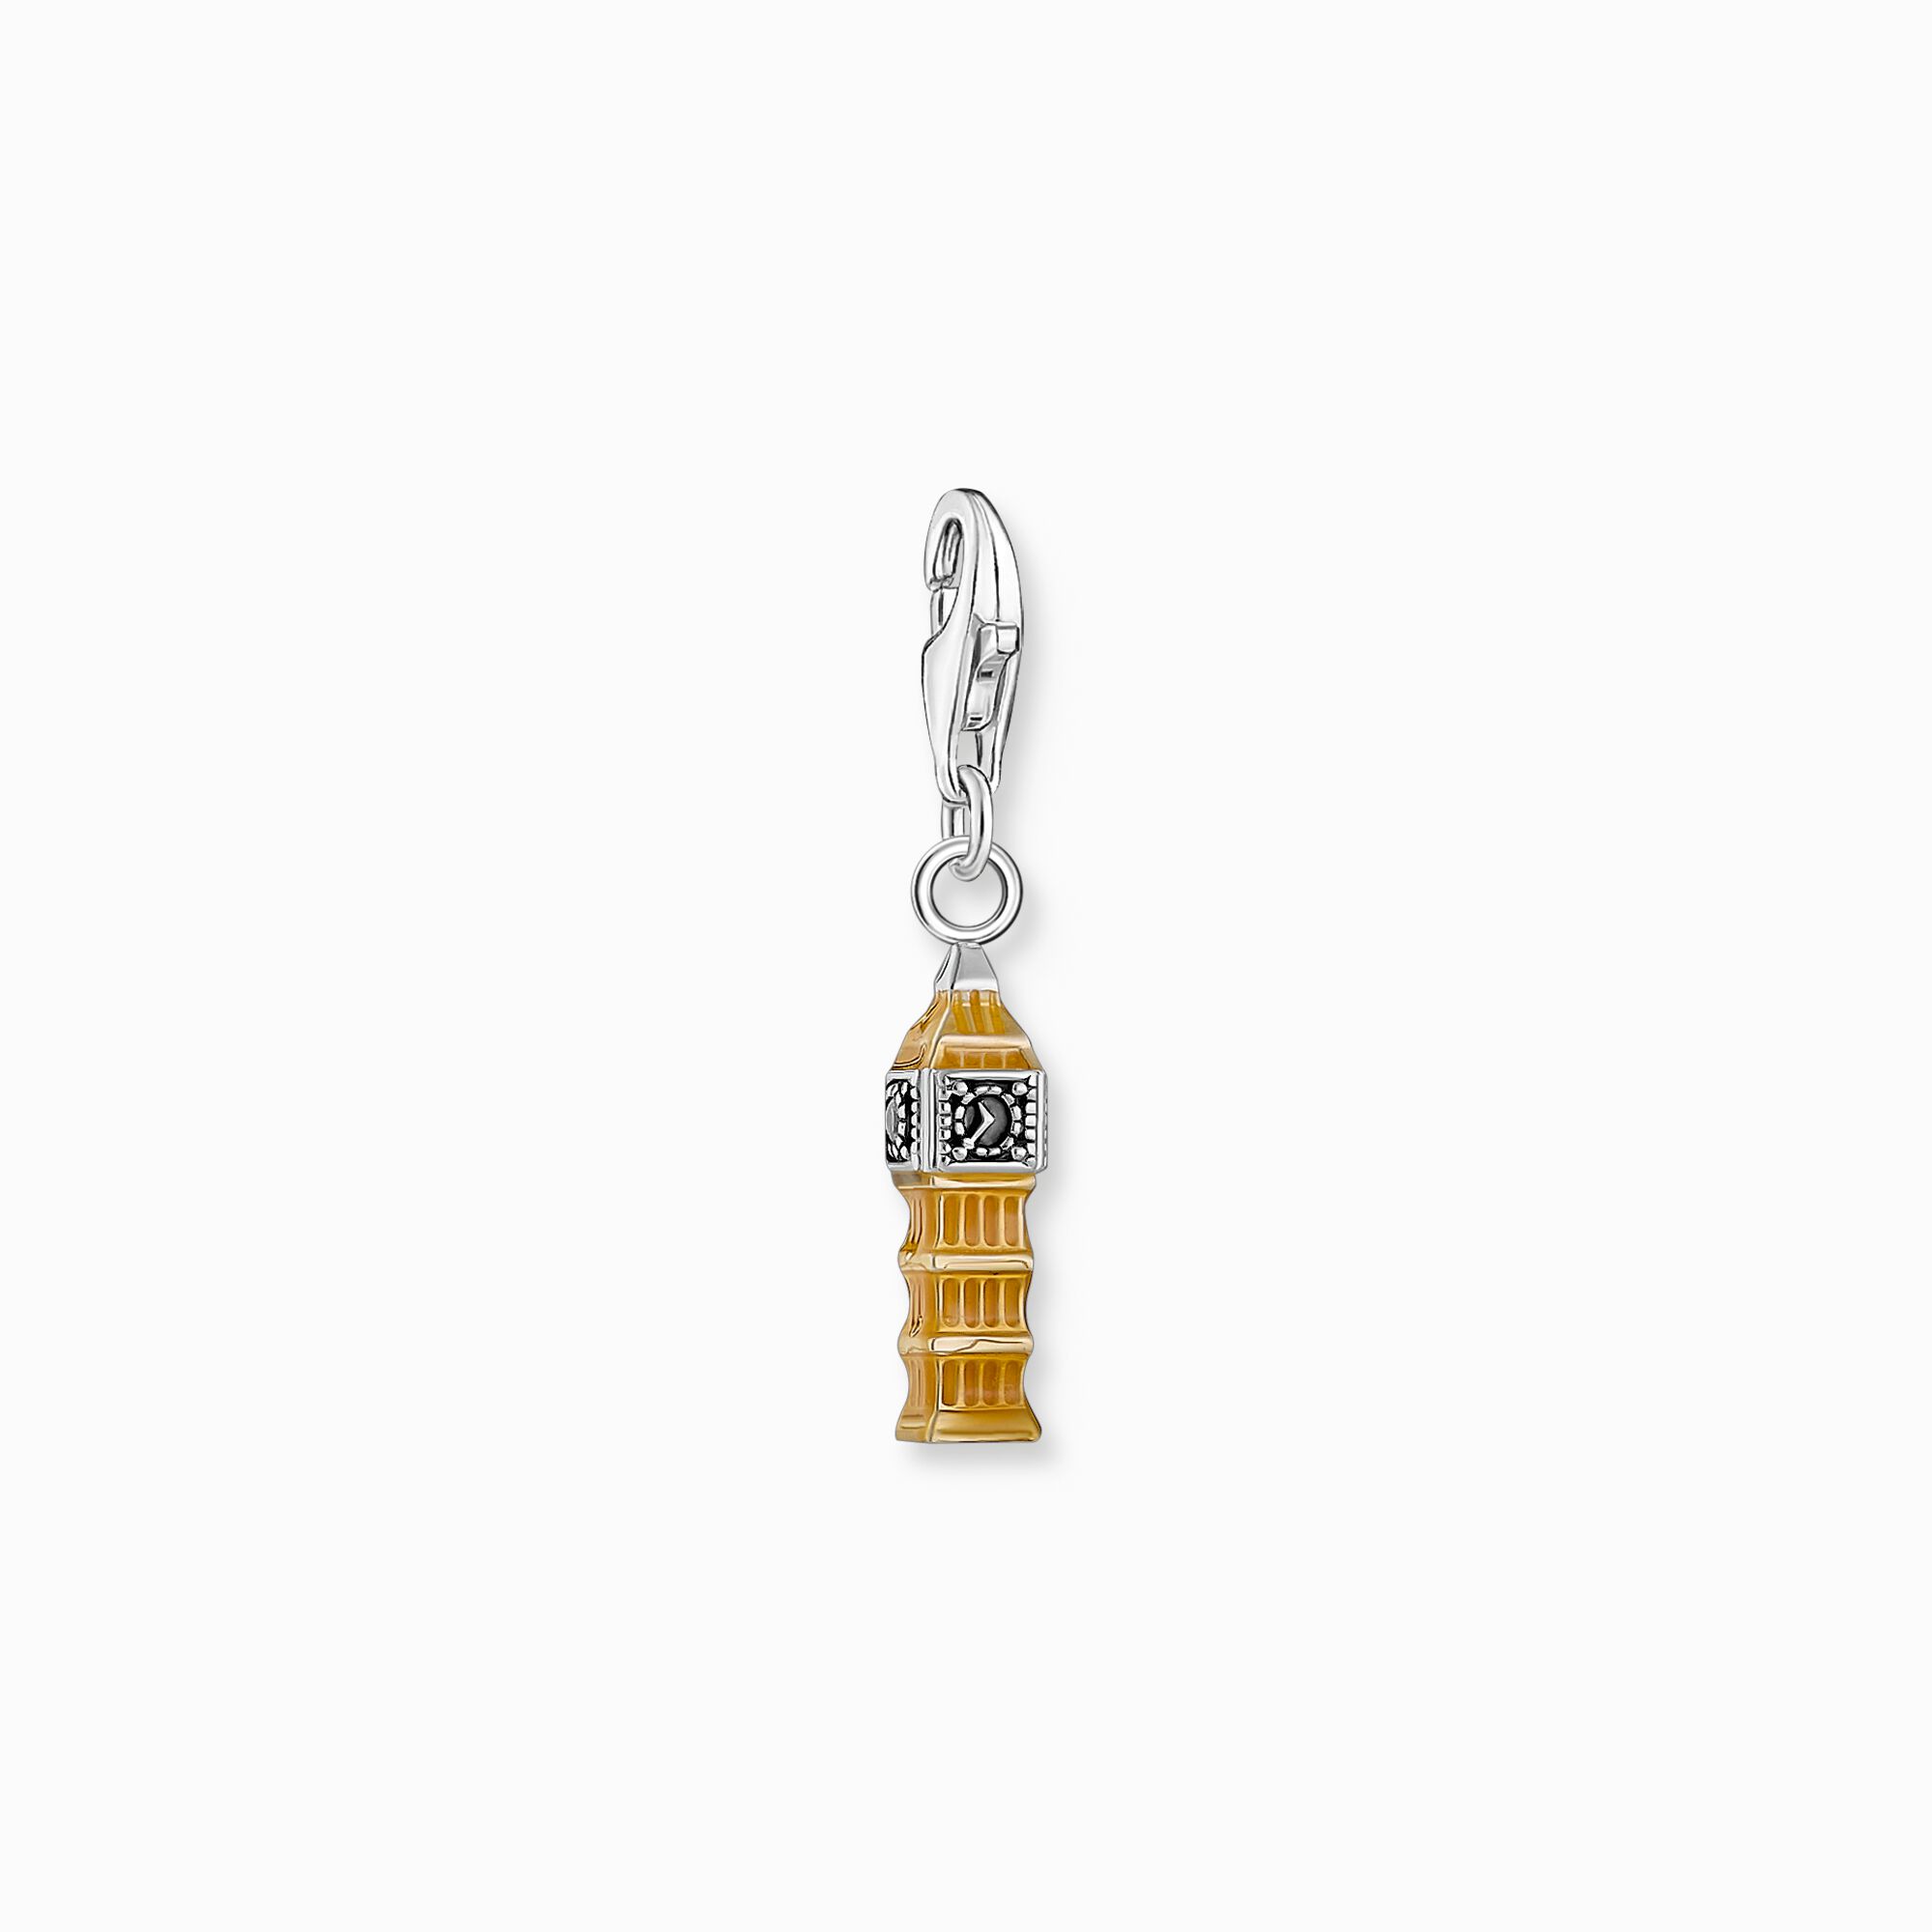 Charm LONDON Big Ben realizado en plata de la colección Charm Club en la tienda online de THOMAS SABO